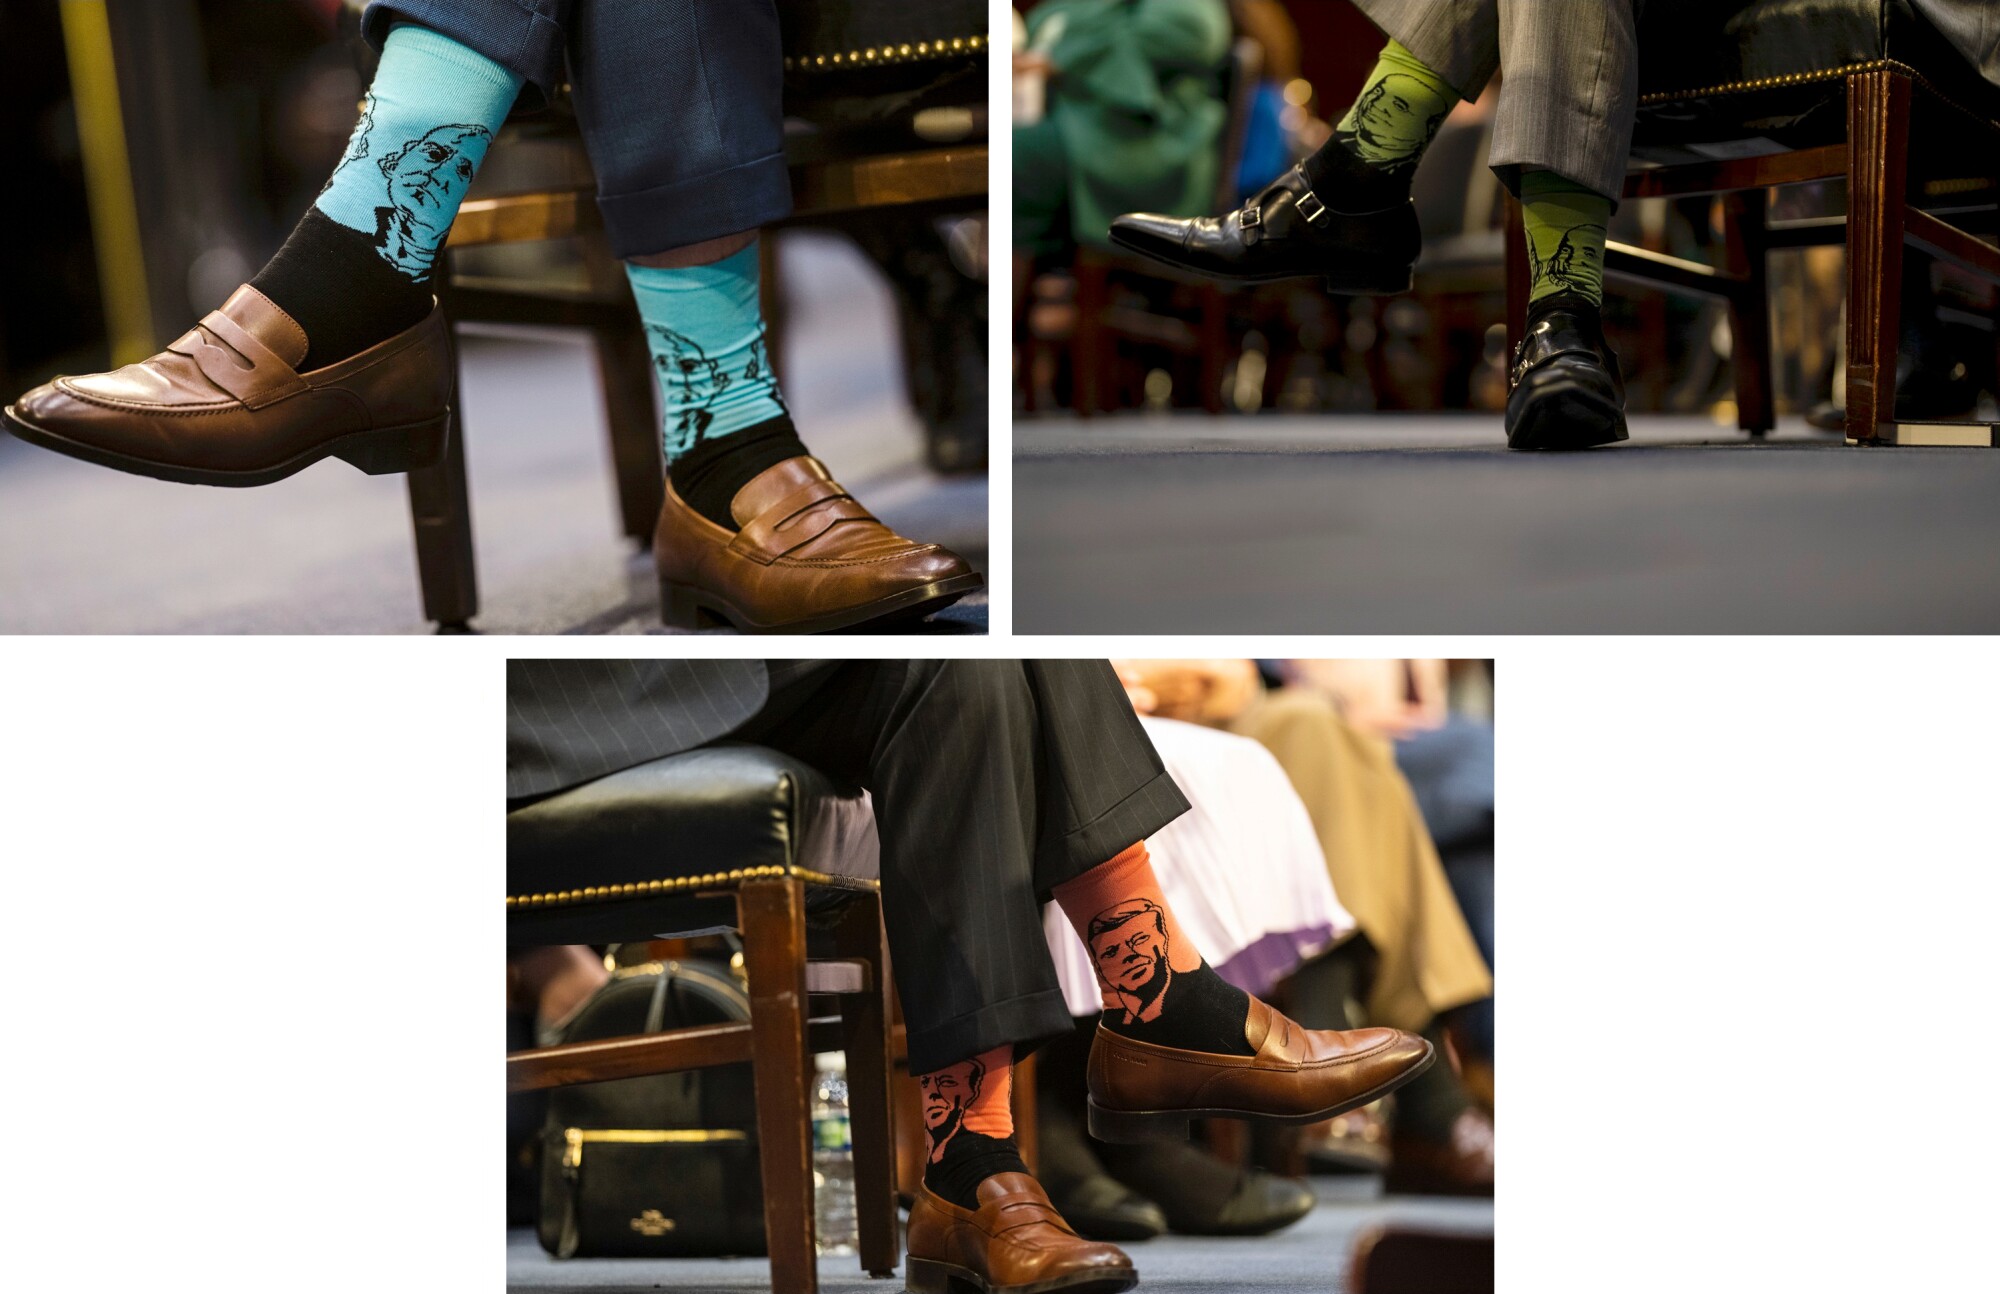 پاتریک جکسون جوراب هایی می پوشد که چهره شخصیت های سیاسی برجسته تاریخ آمریکا را نشان می دهد.